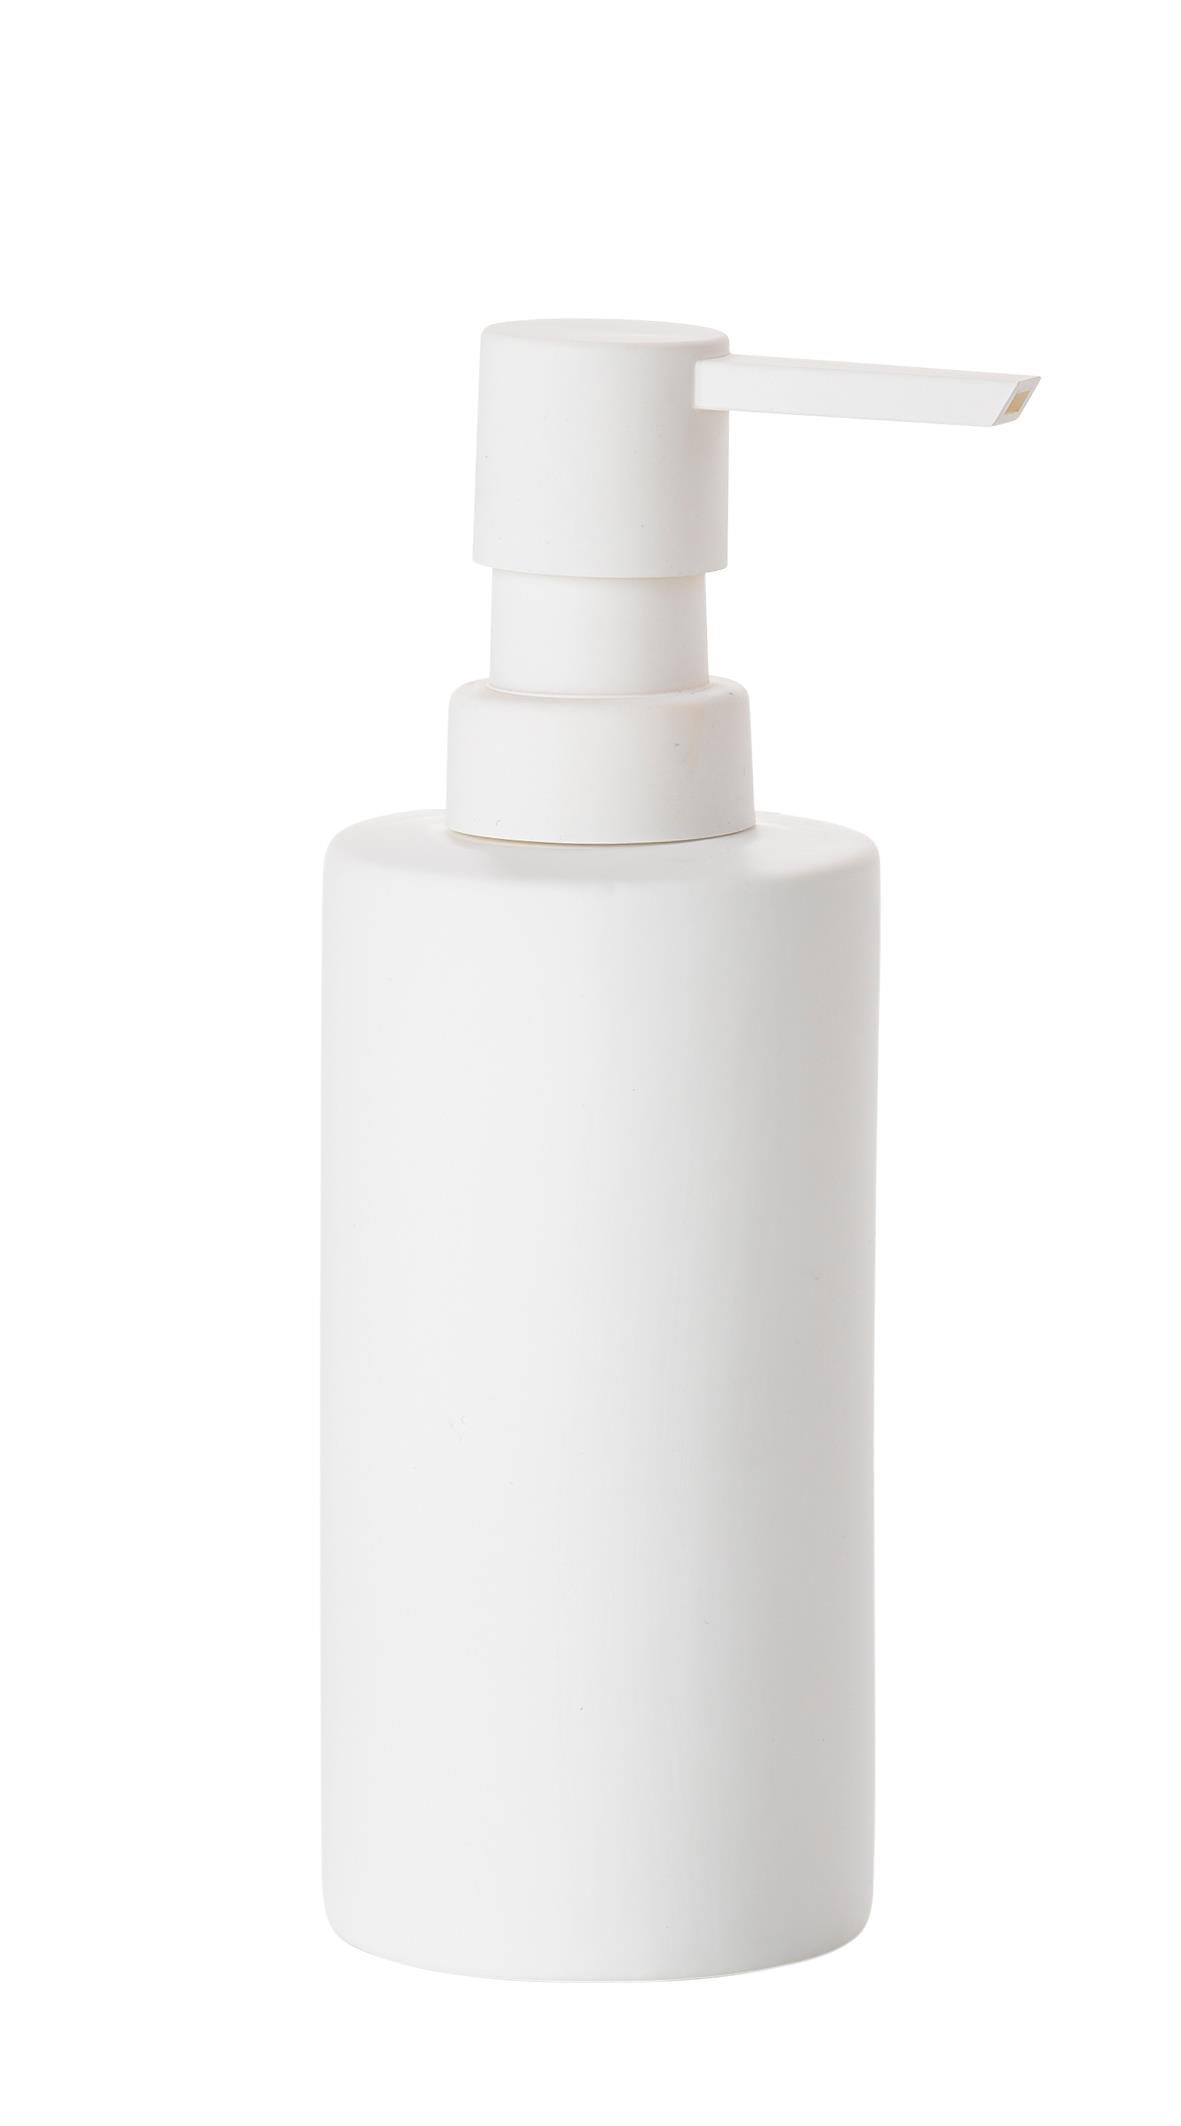 Zone - Solo Soap Dispenser - White (330204)